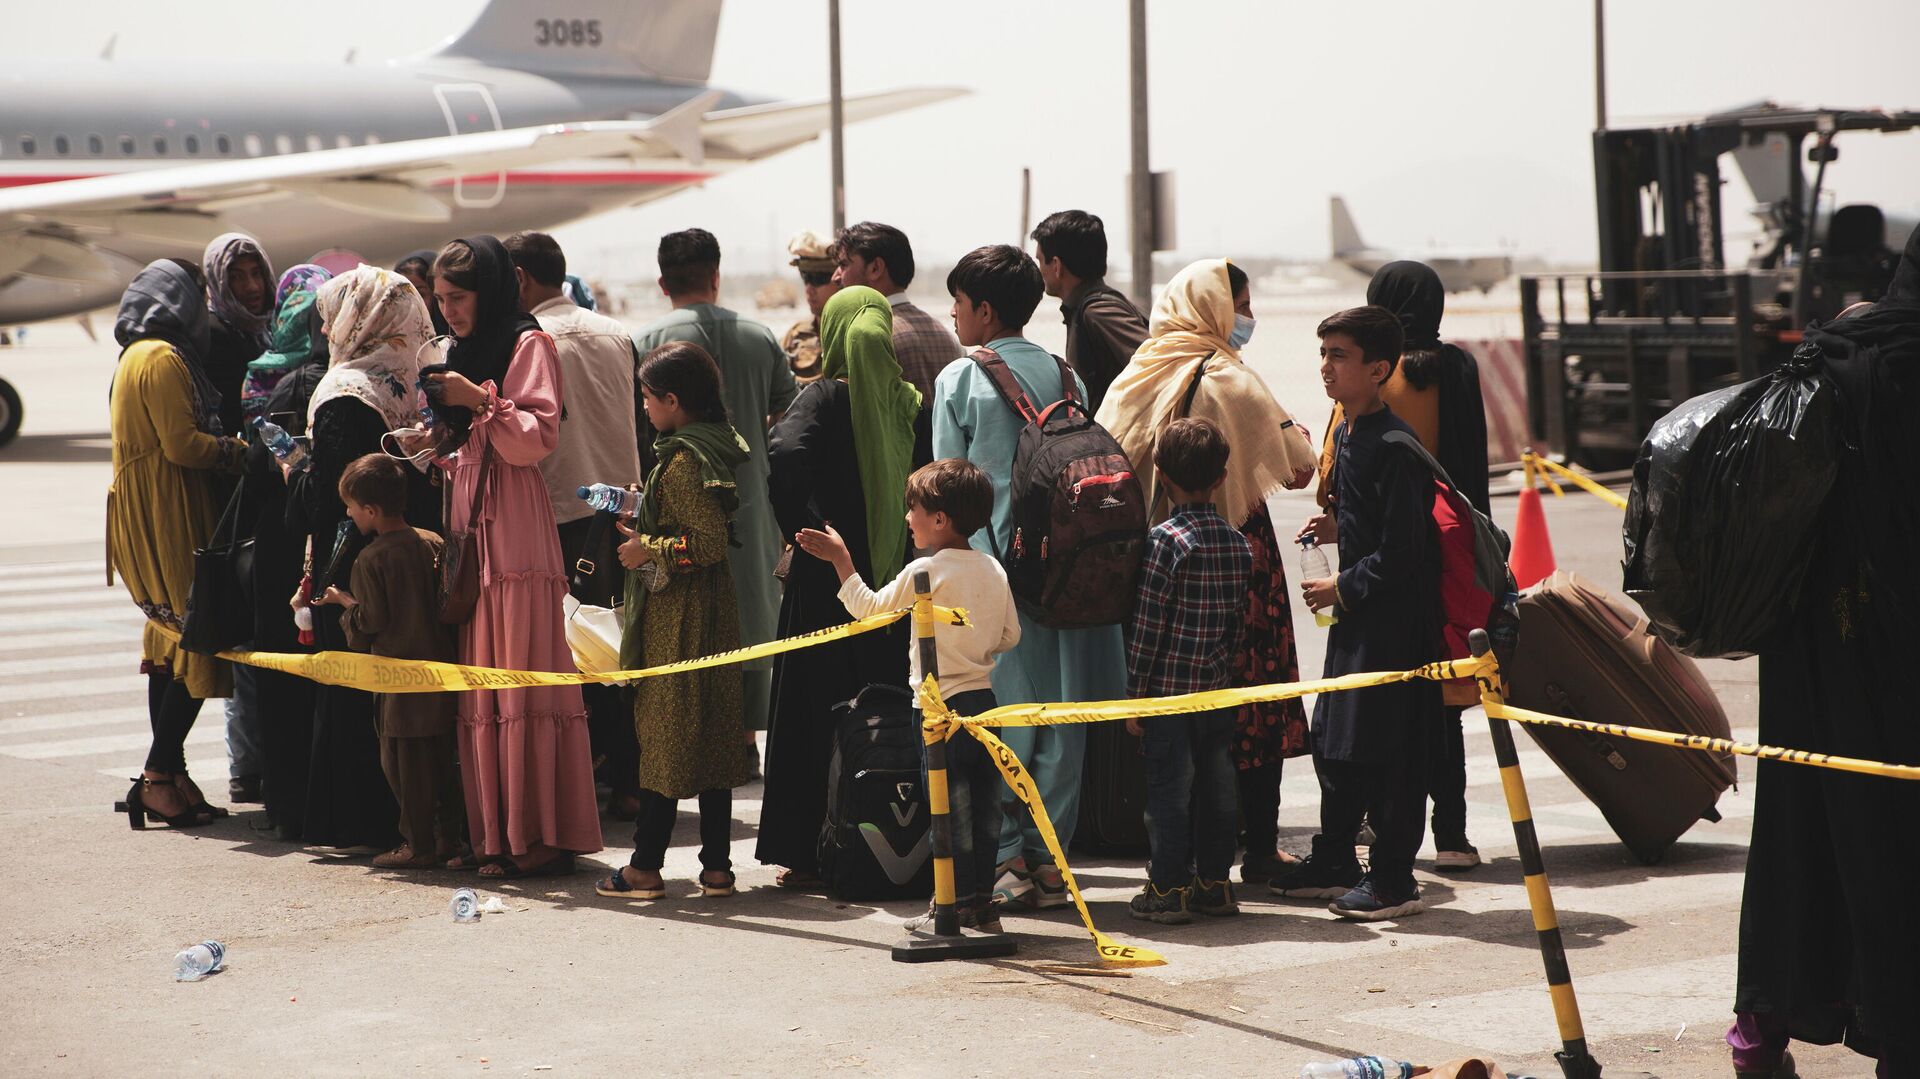 Civiles abordan un avión durante una evacuación en el Aeropuerto Internacional Hamid Karzai, Kabul - Sputnik Mundo, 1920, 24.08.2021